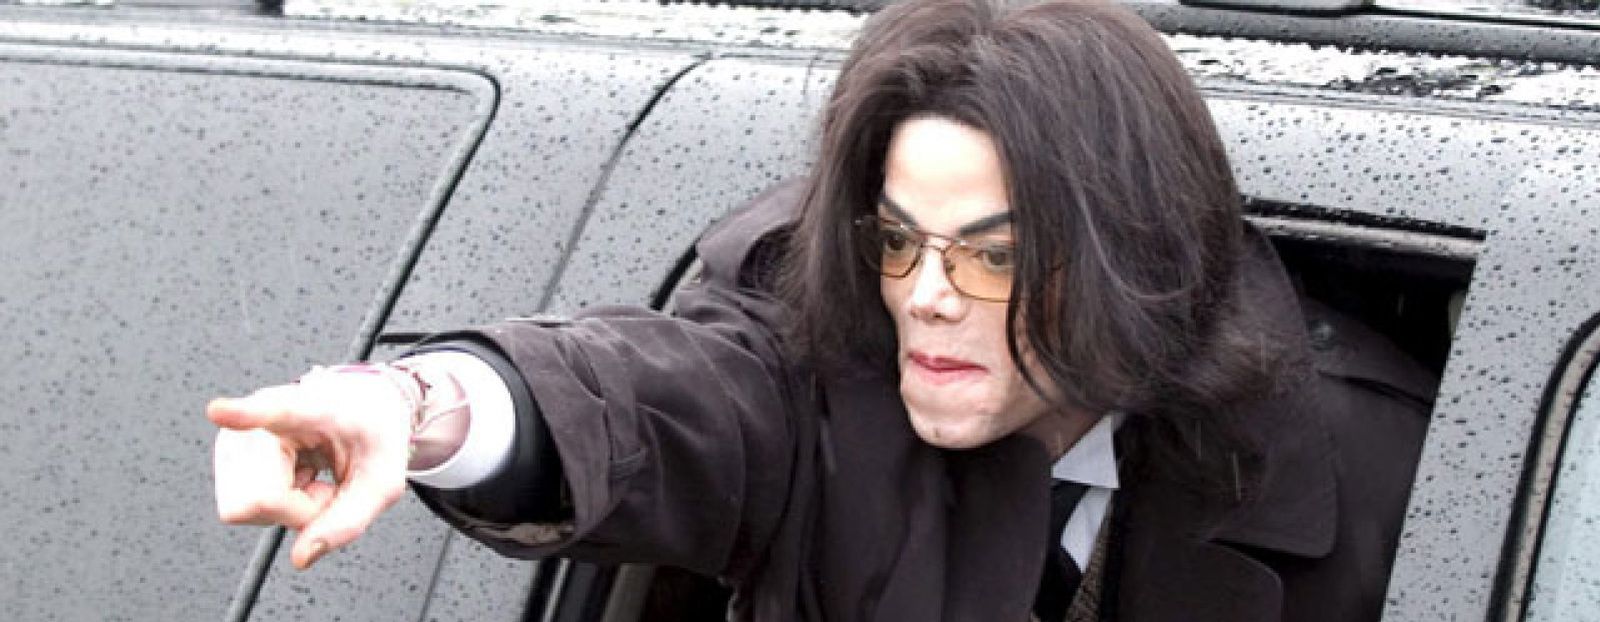 Foto: Los médicos trataron durante una hora de resucitar a Michael Jackson